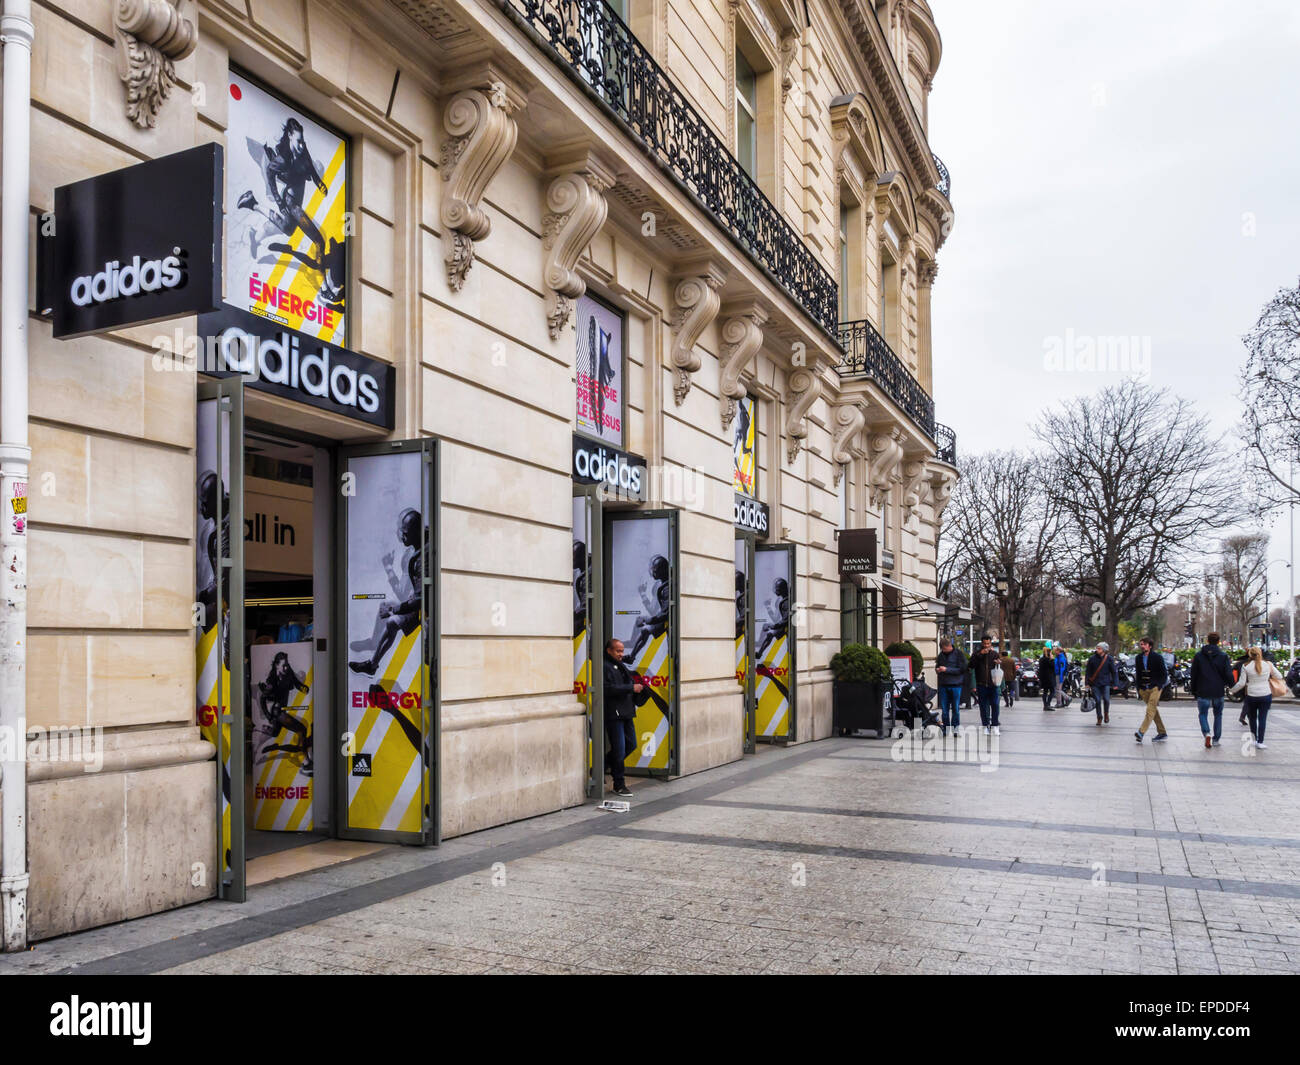 Tienda Adidas exterior, tienda de de artículos deportivos y ropa, París Fotografía de - Alamy